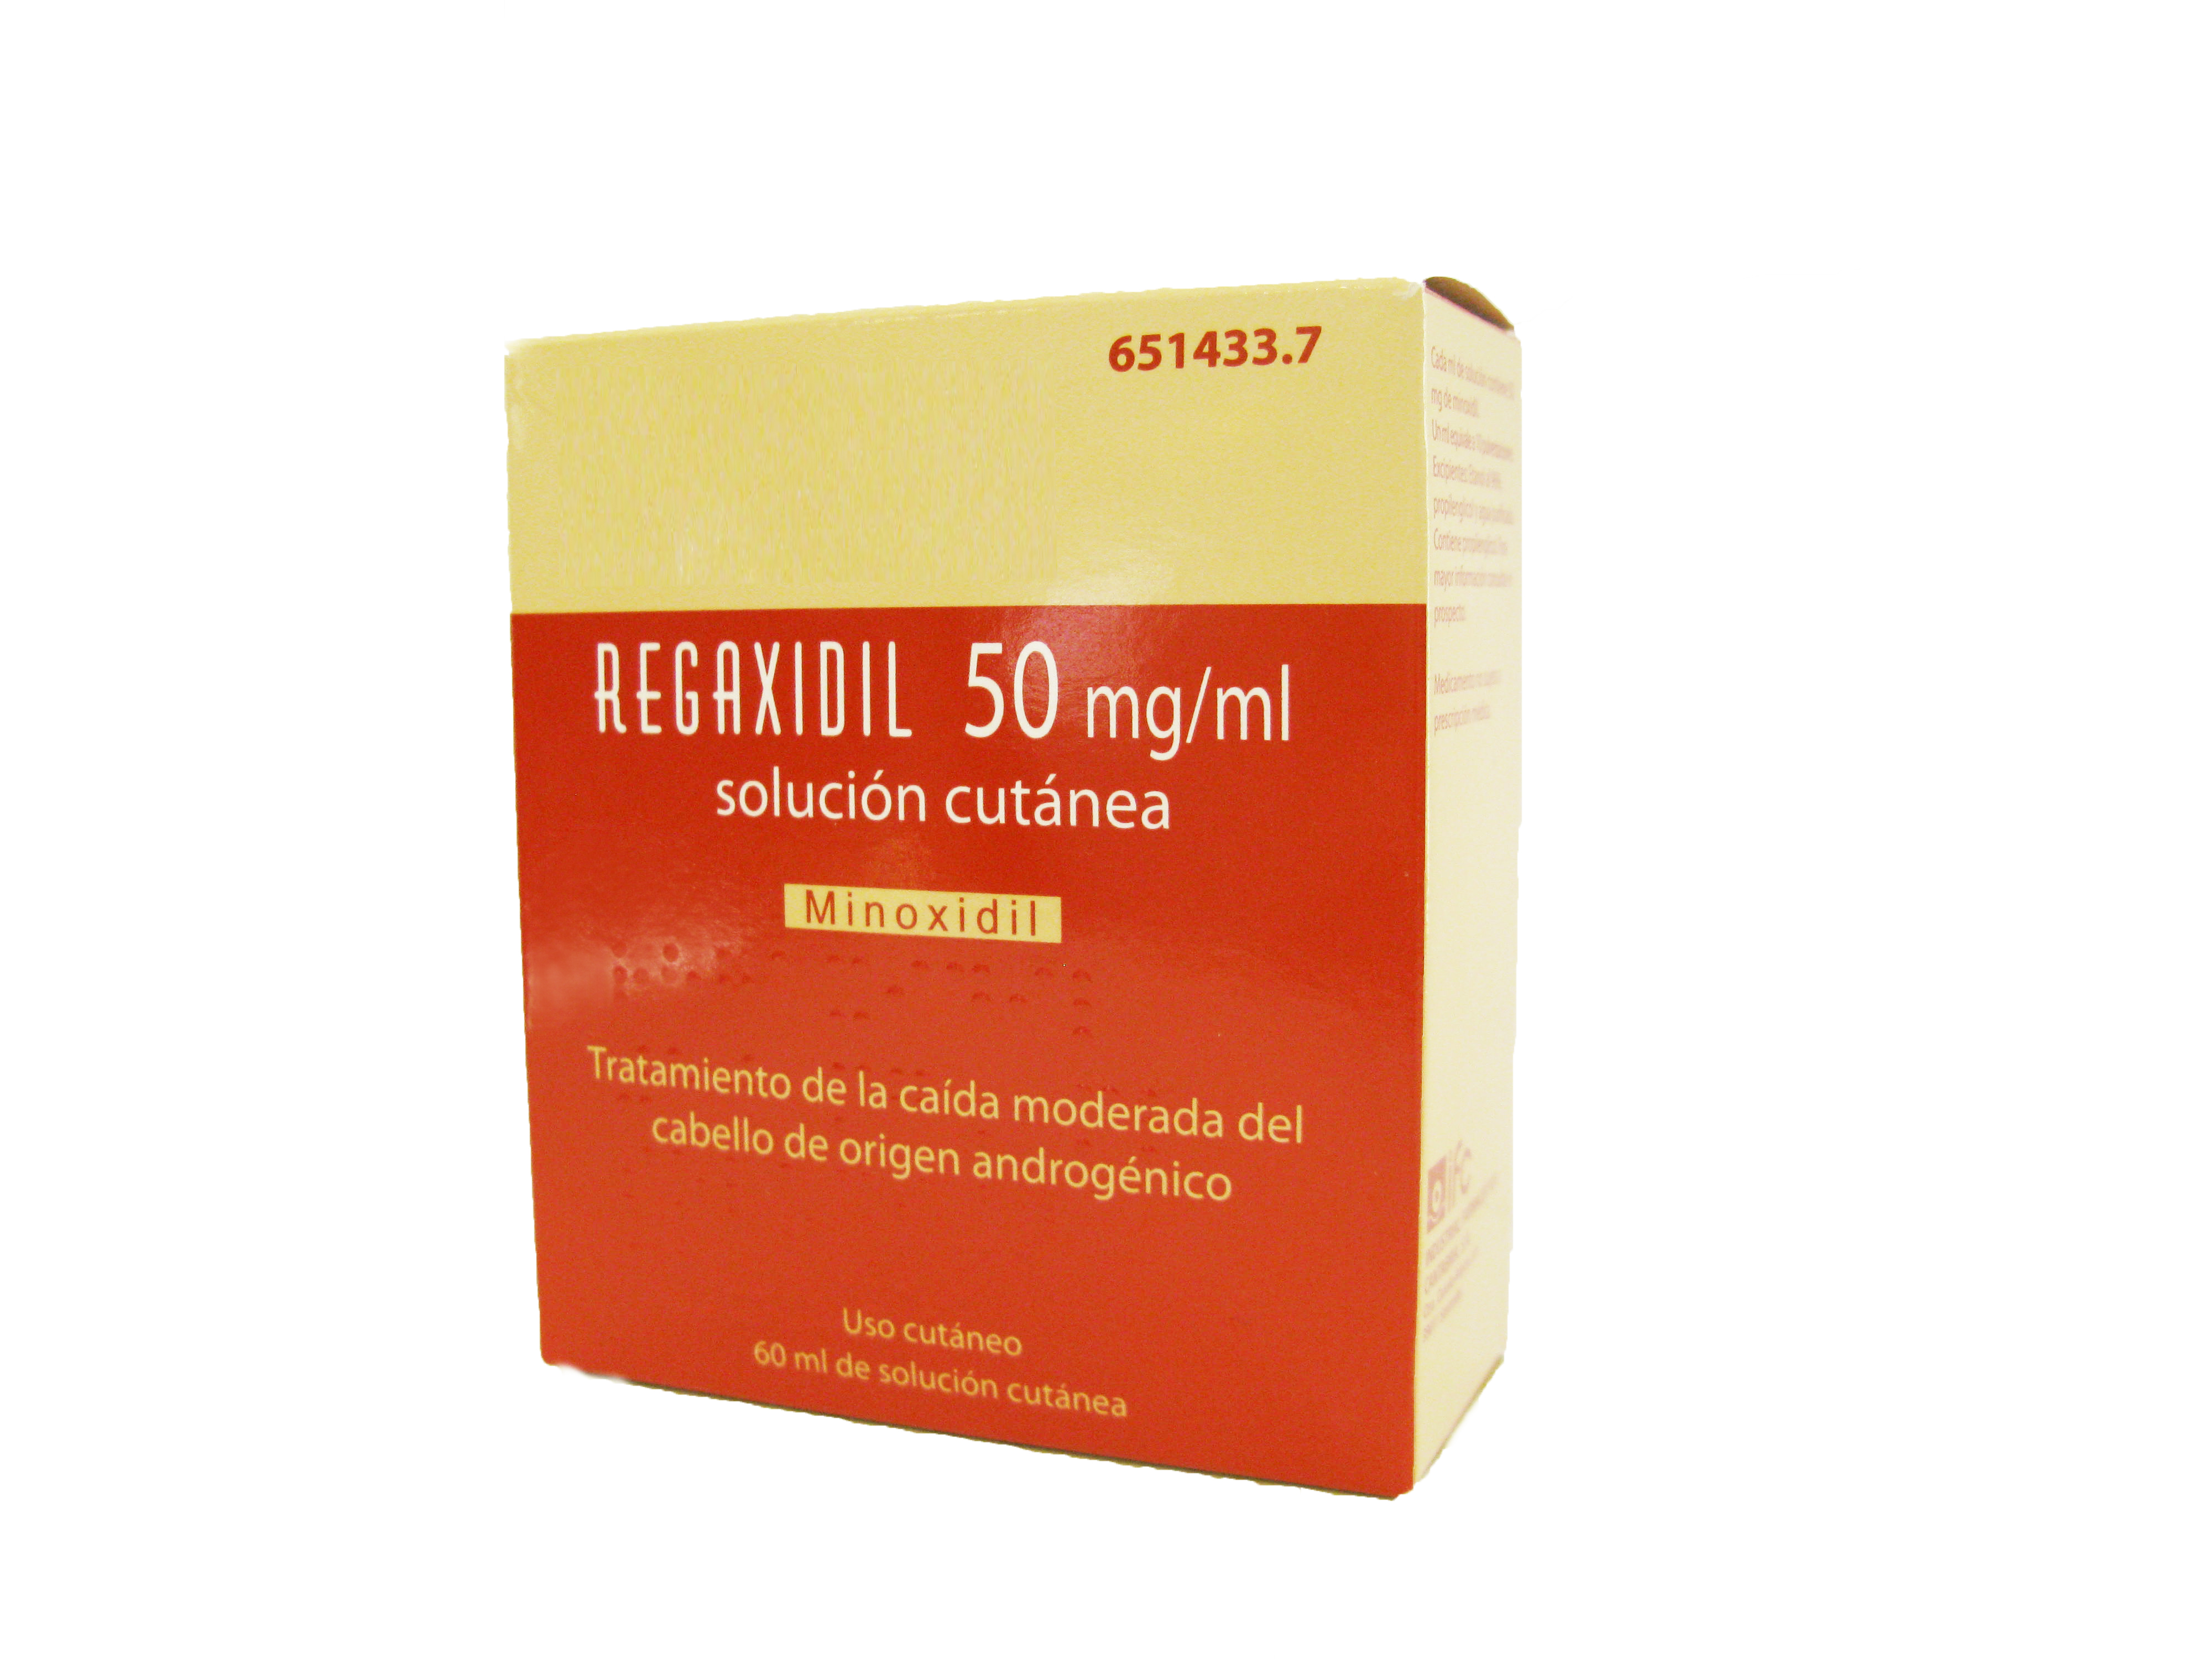 REGAXIDIL 50 mg/ml SOLUCION CUTANEA , 1 frasco de 60 ml